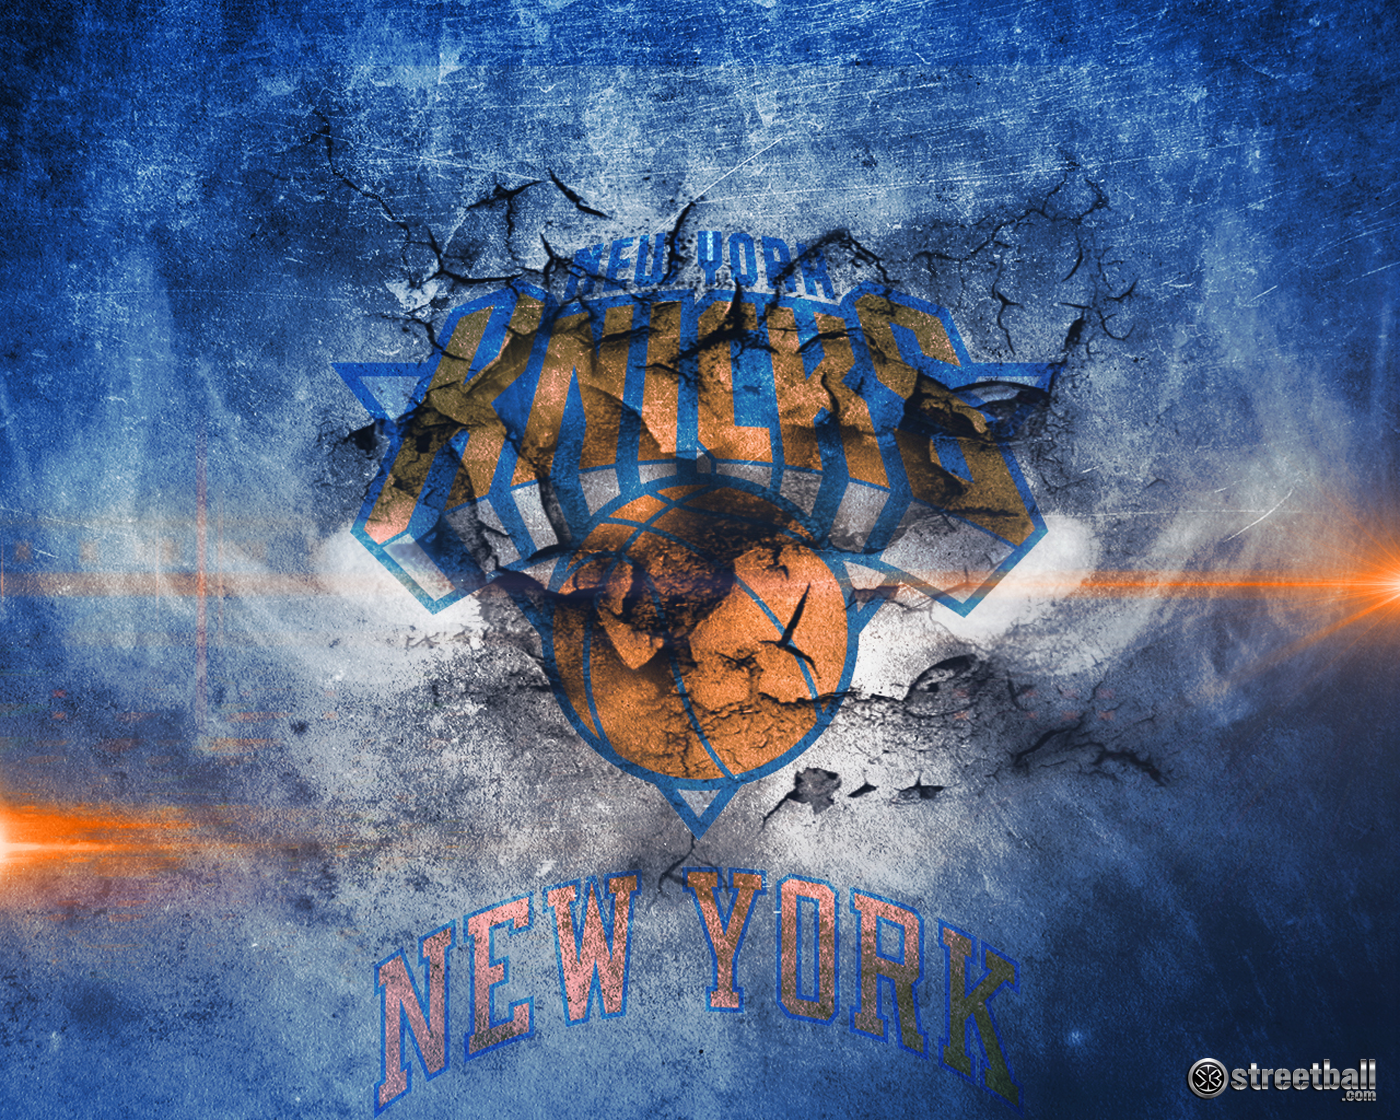 NBA New York Knicks 2015 Basketball Wallpaper cute Wallpapers